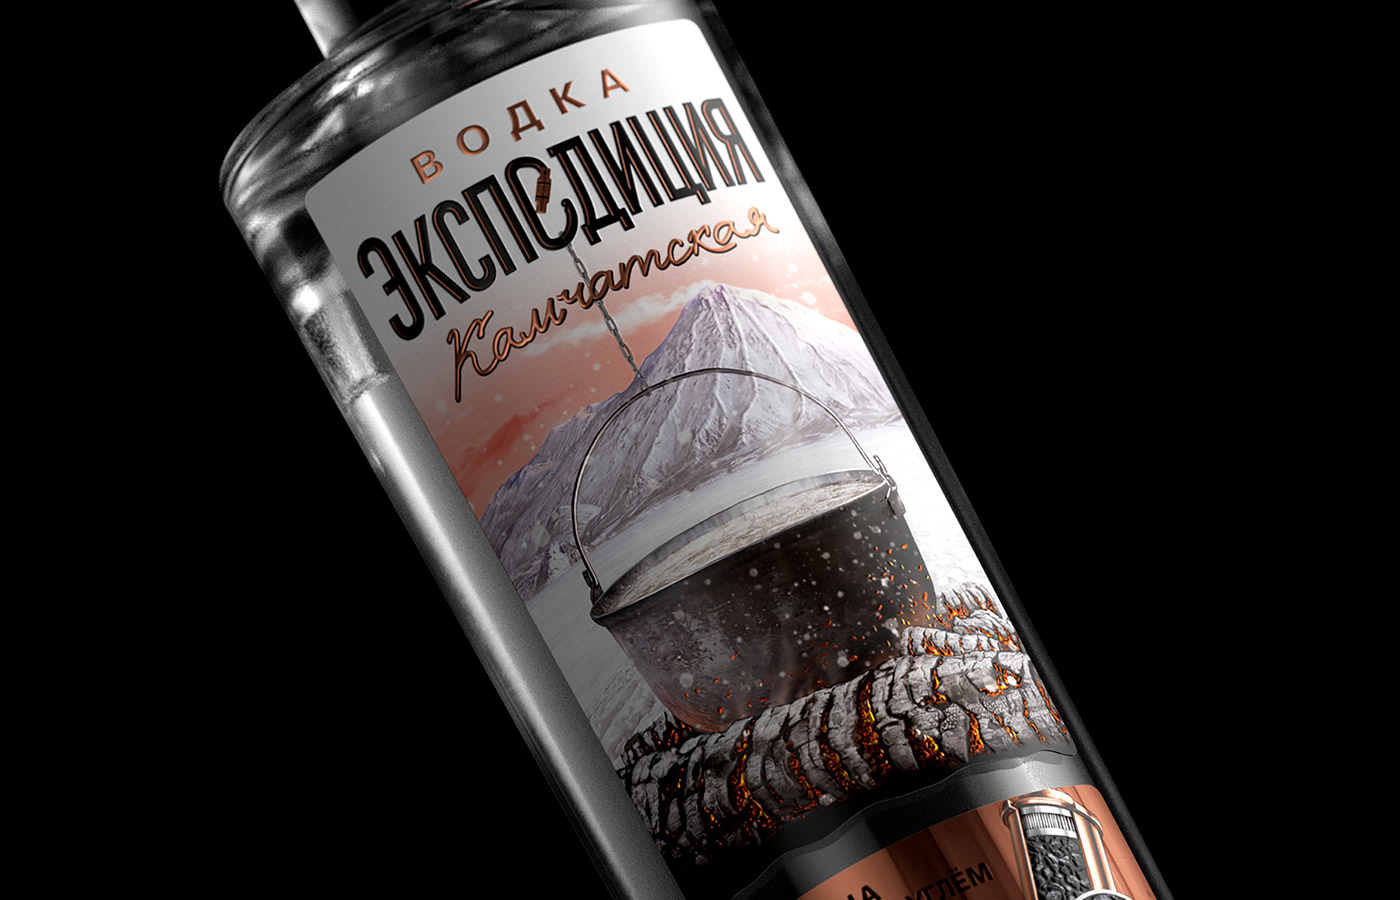 ASG coal expedition Vodka водка камчатская карельская Костер уголь экспедиция